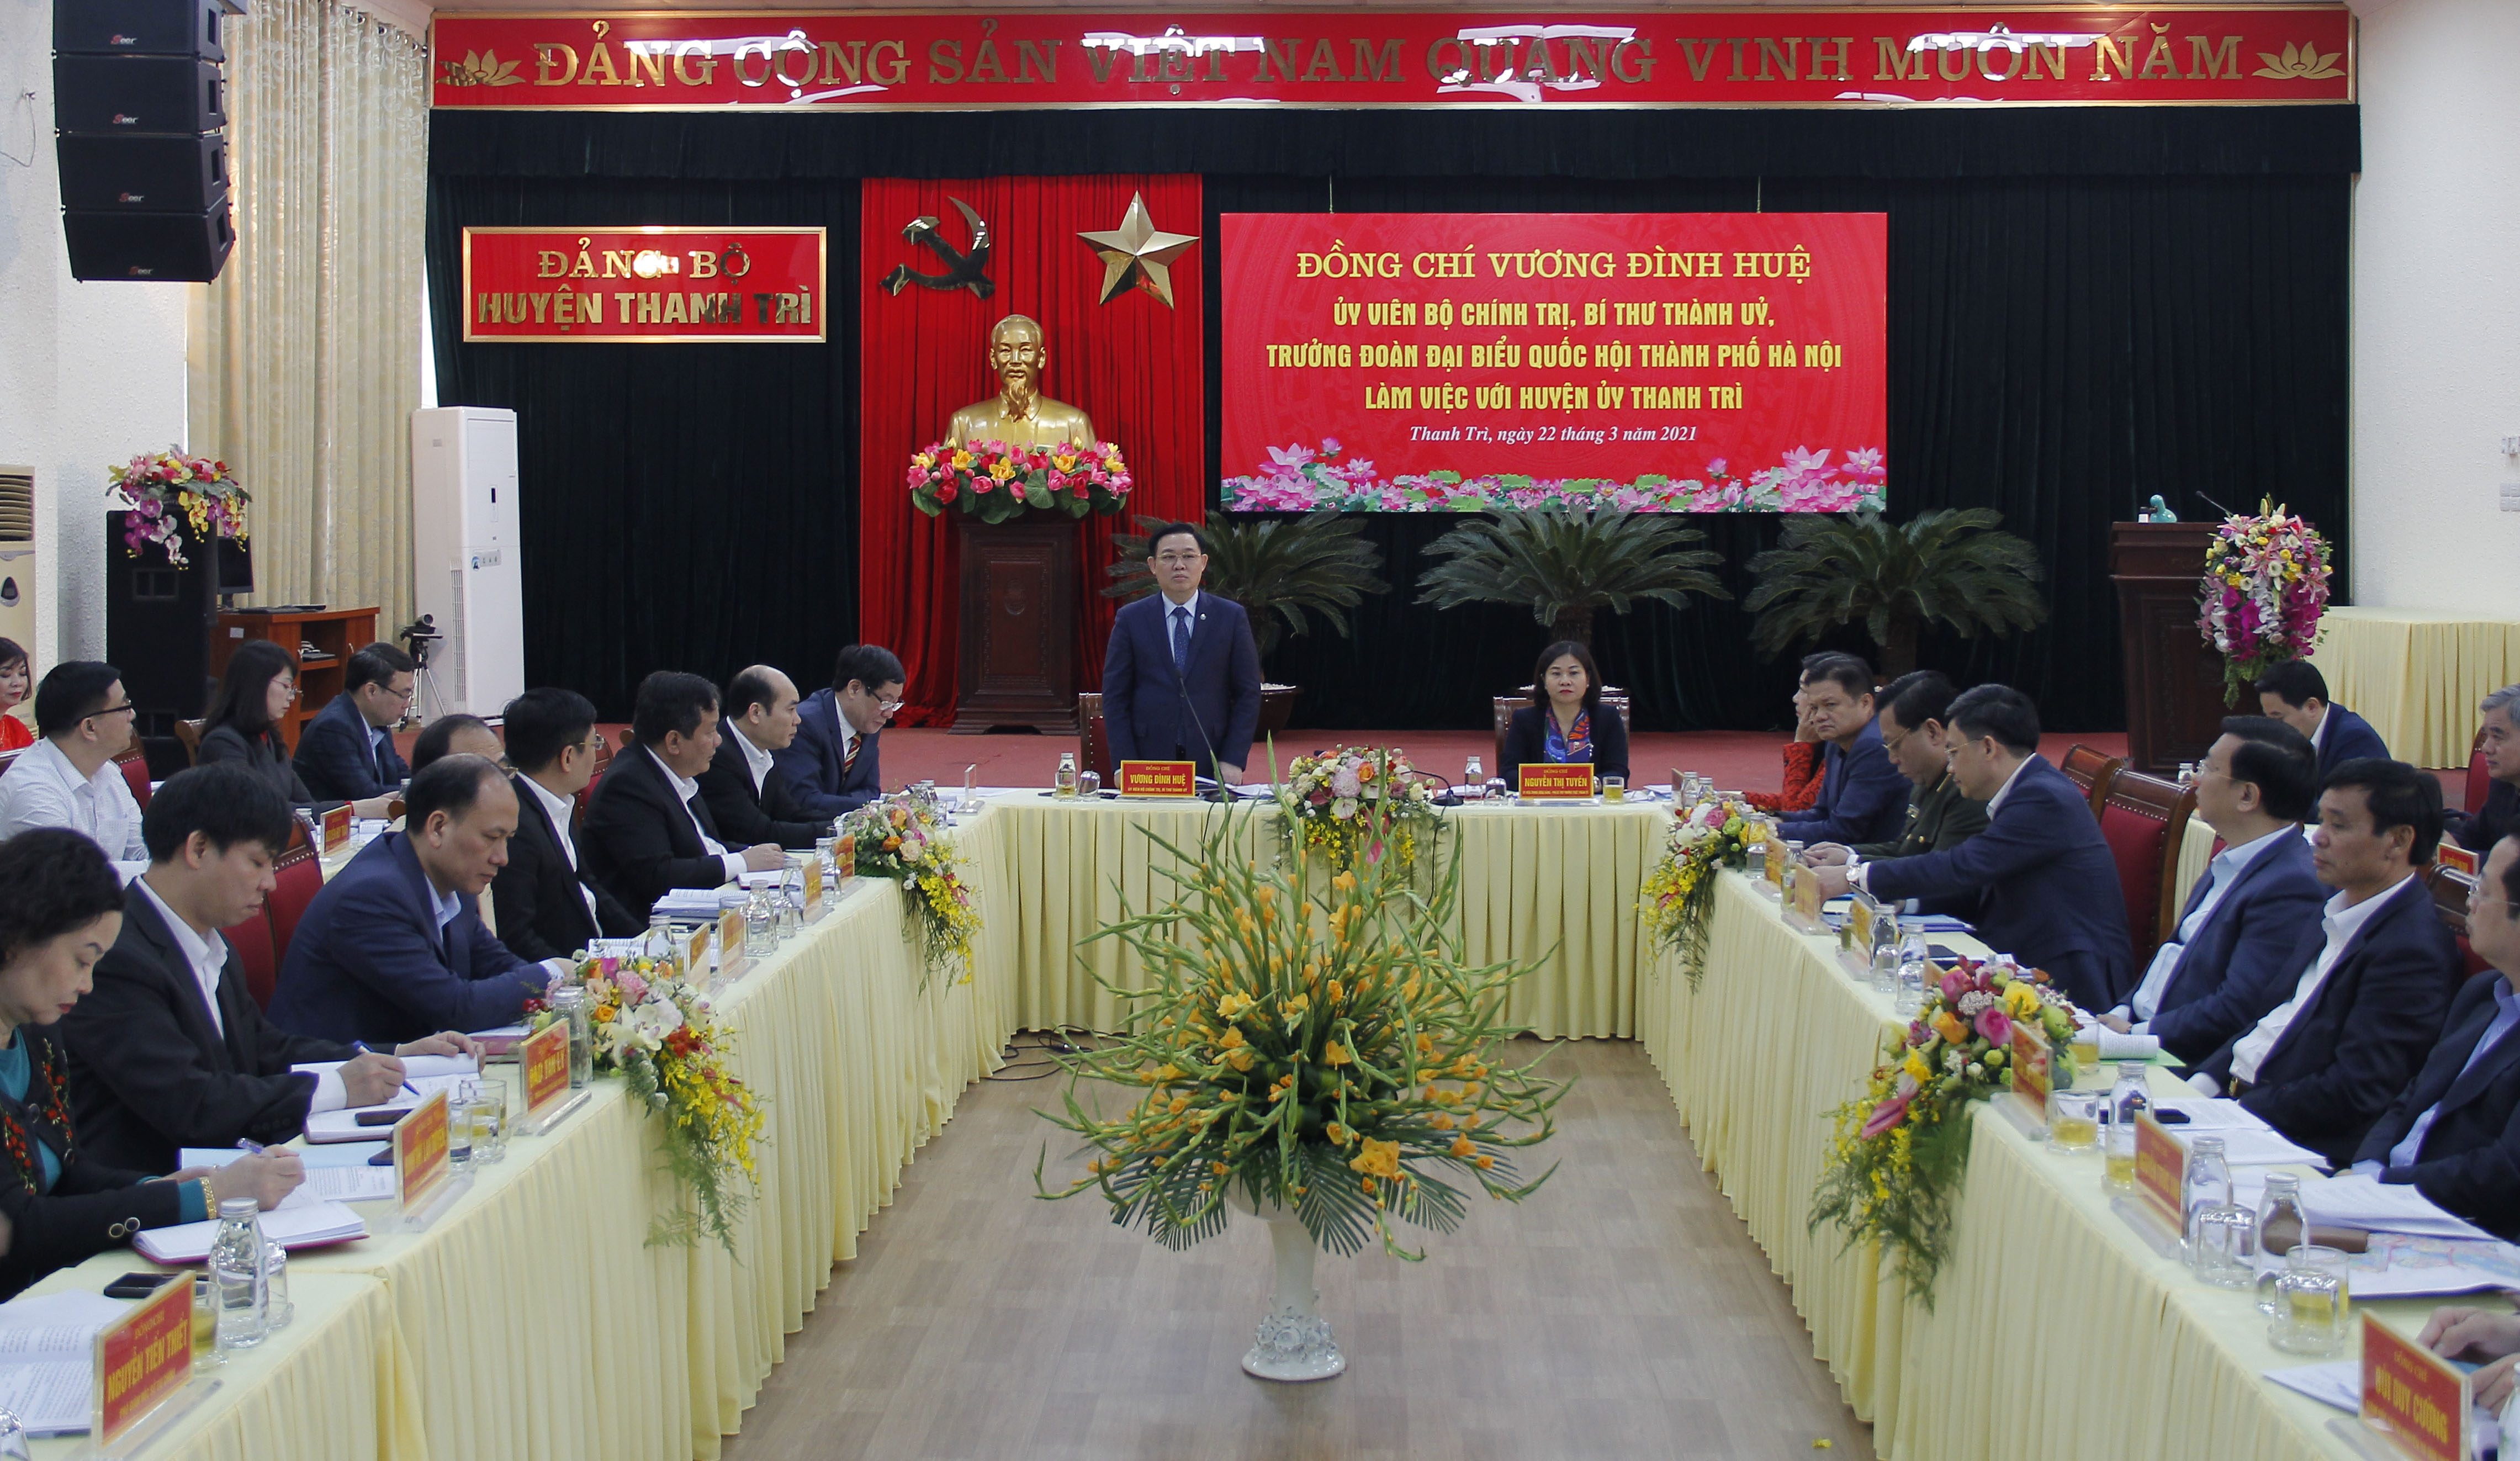 	Ủy viên Bộ Chính trị, Bí thư Thành ủy Vương Đình Huệ kết luận tại buổi làm việc